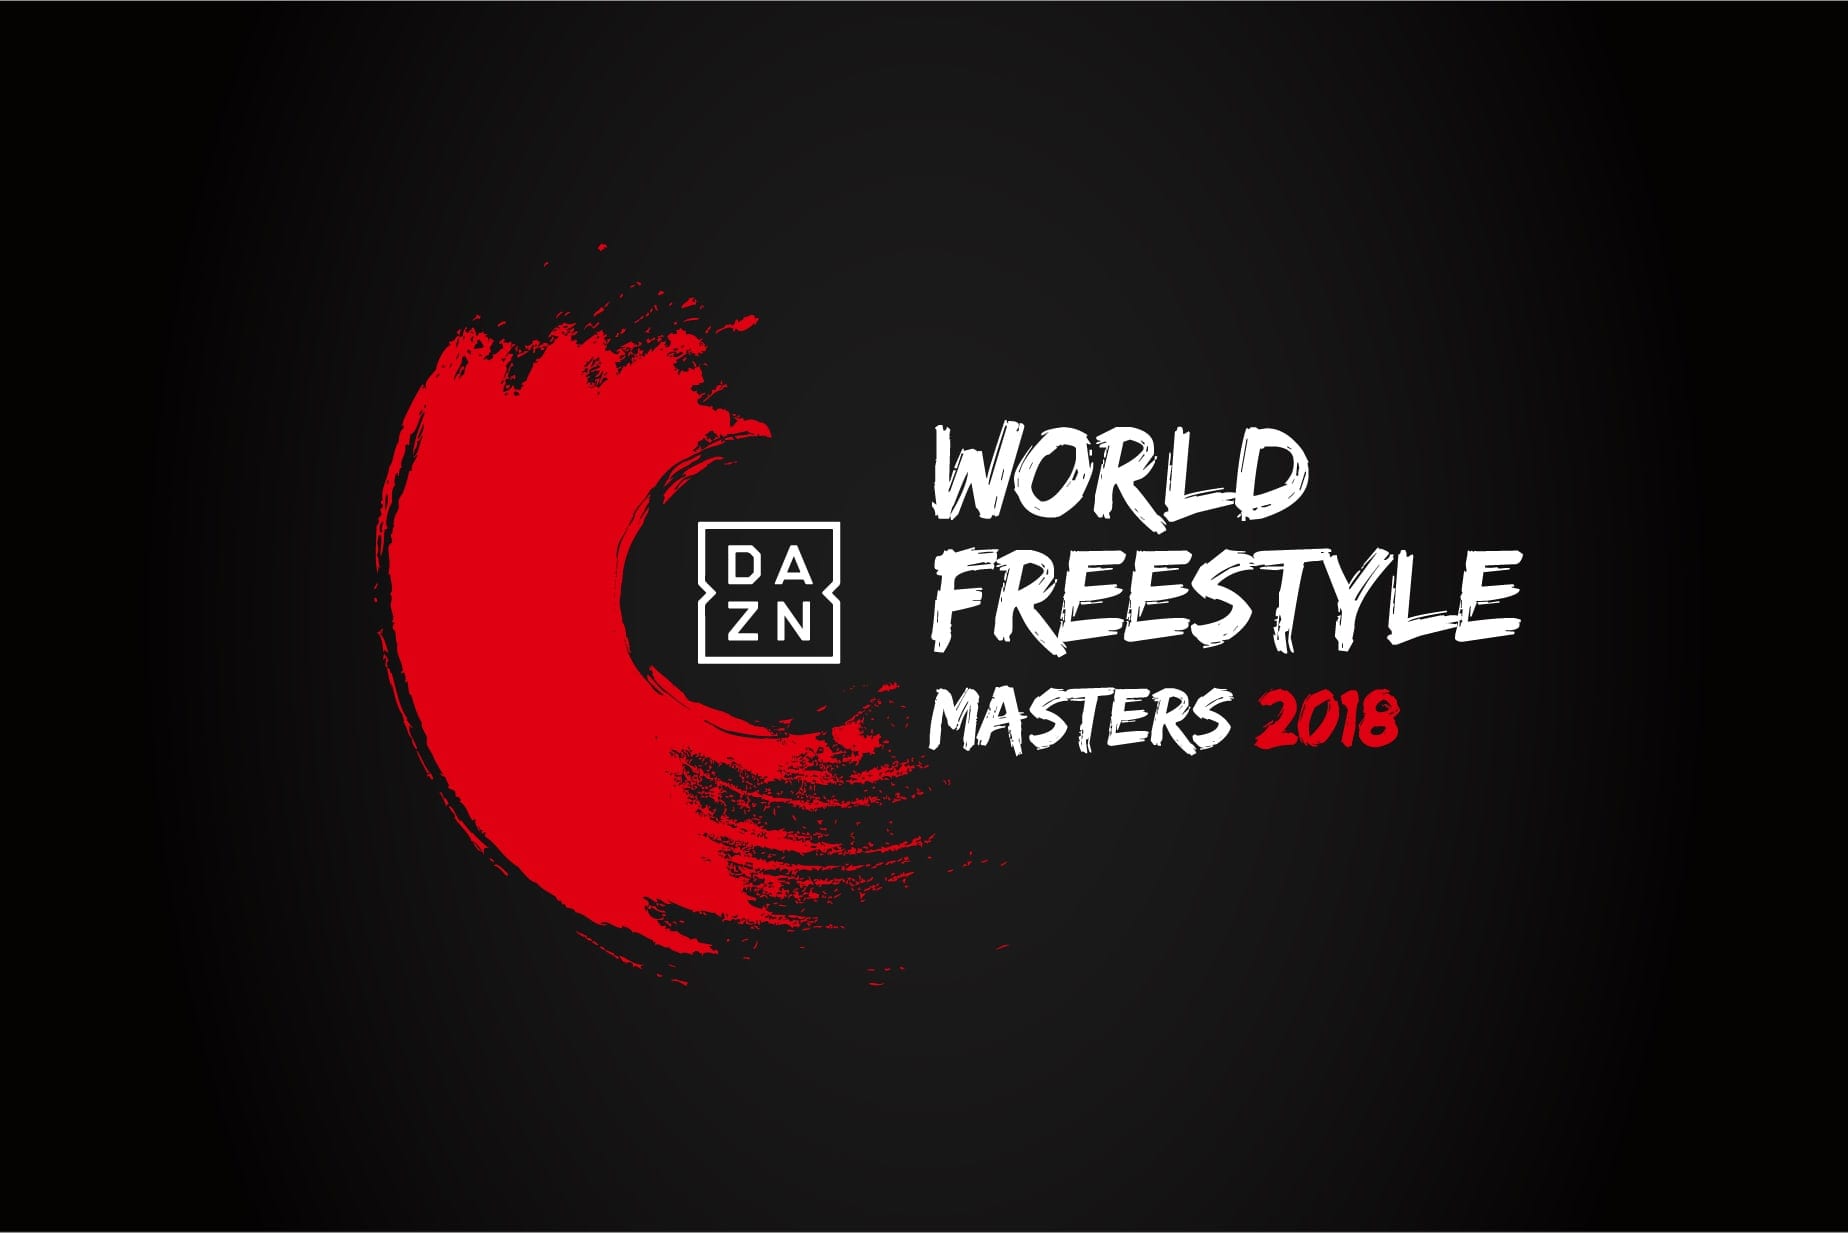 DAZN WORLD FREESTYLE MASTERS 2018